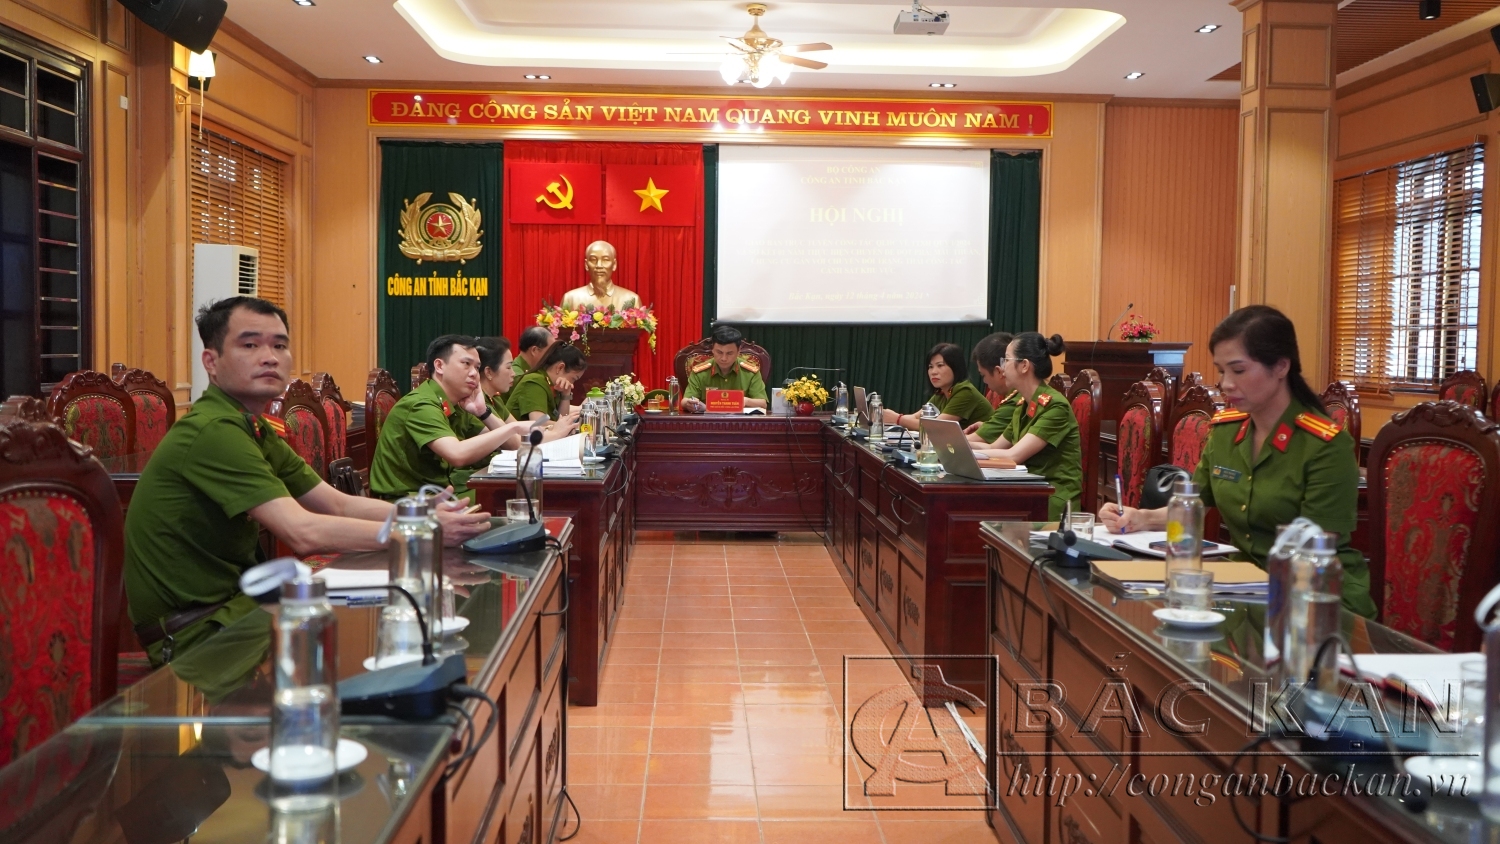 Đại tá Nguyễn Thanh Tuân, Phó Giám đốc Công an tỉnh chủ trì tại điểm cầu Công an tỉnh Bắc Kạn